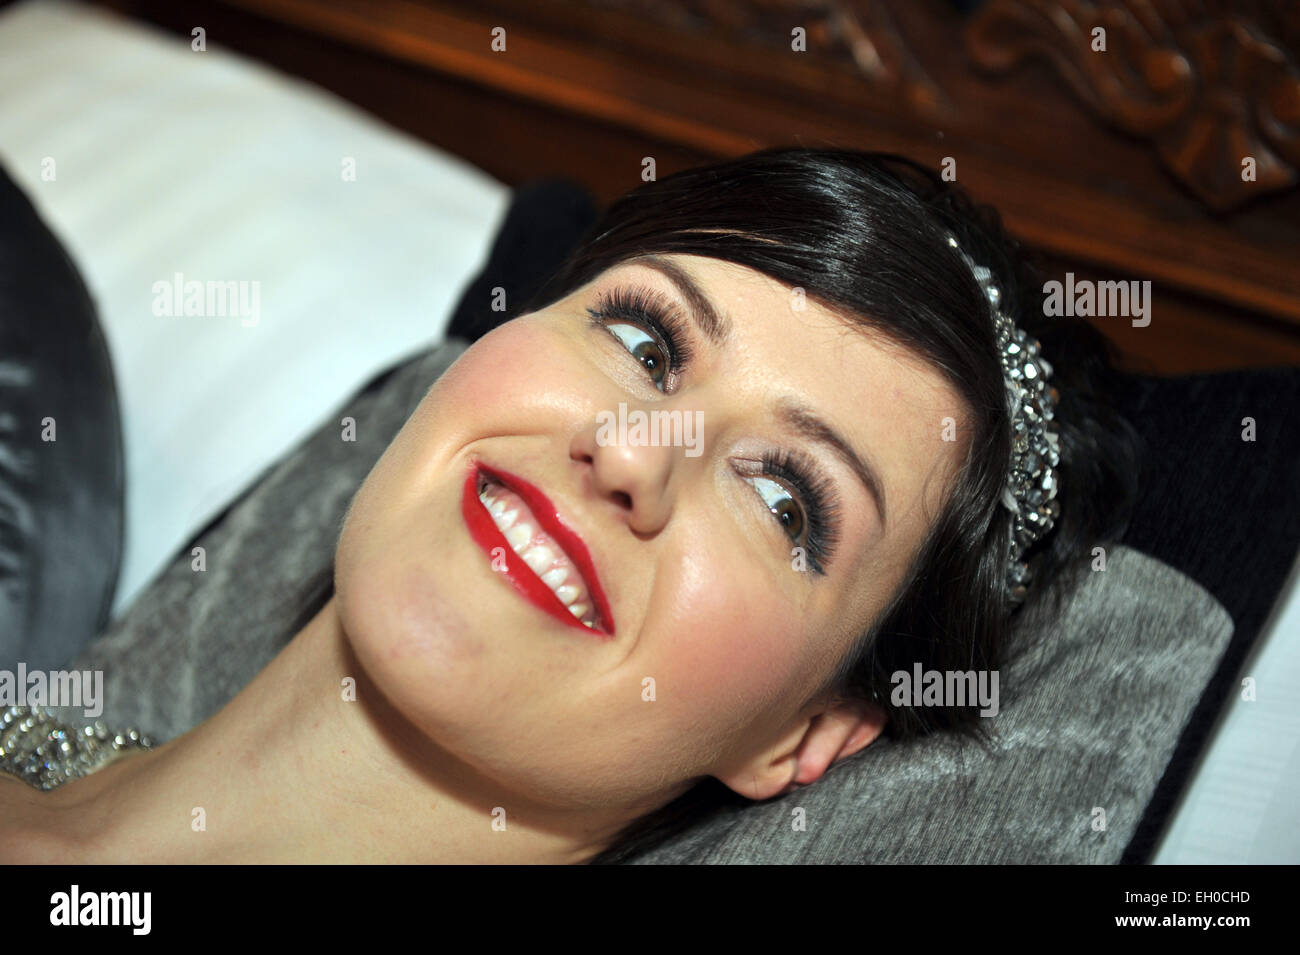 Las mujeres con maquillaje completo acostado sobre una almohada modelo sonriente liberado Foto de stock